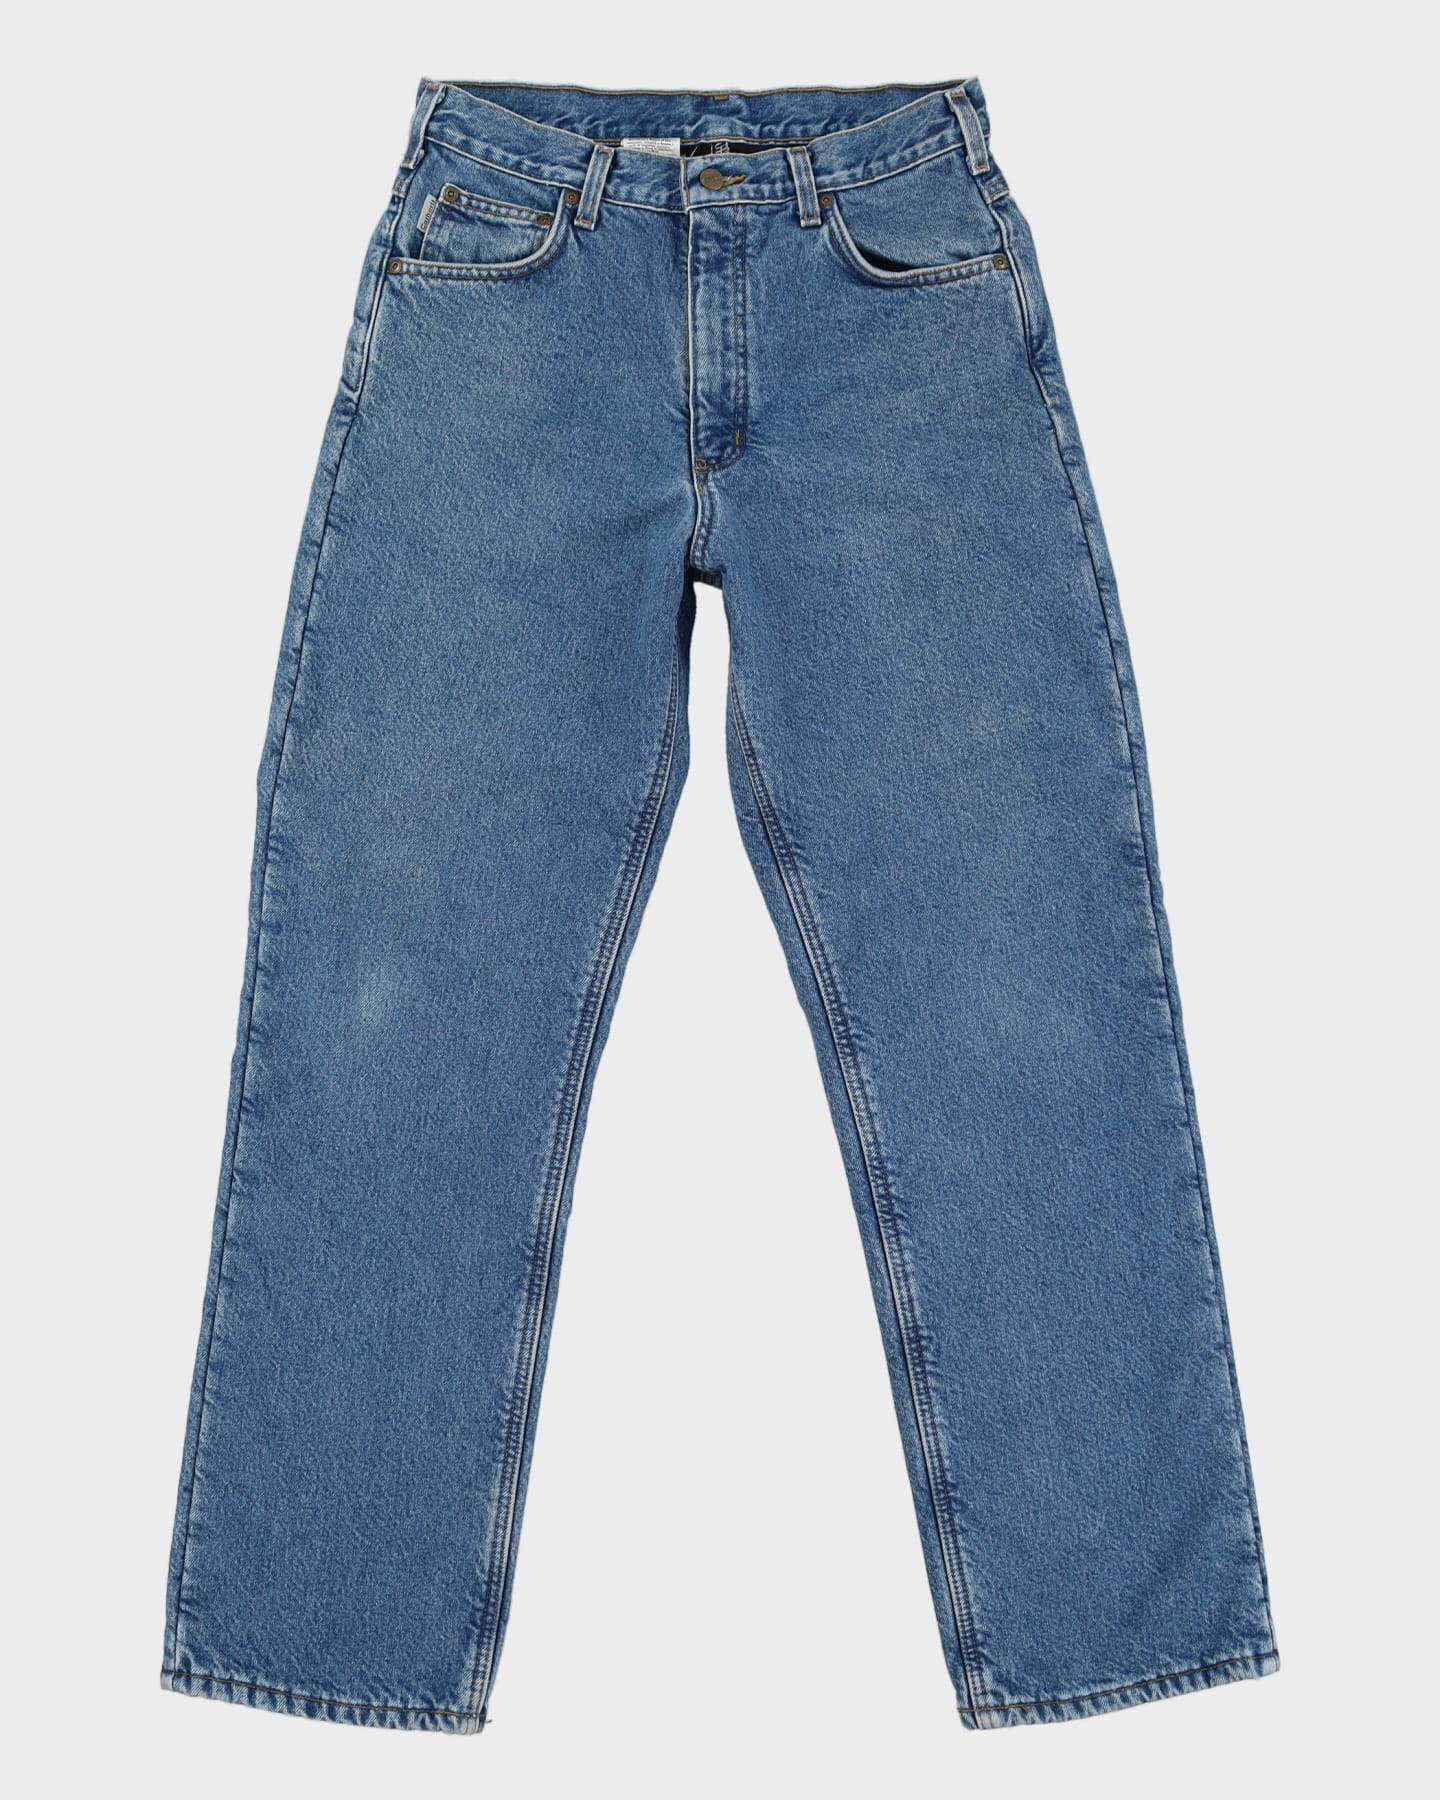 Carhartt Fleece Lined Blue Jeans - W31 L33